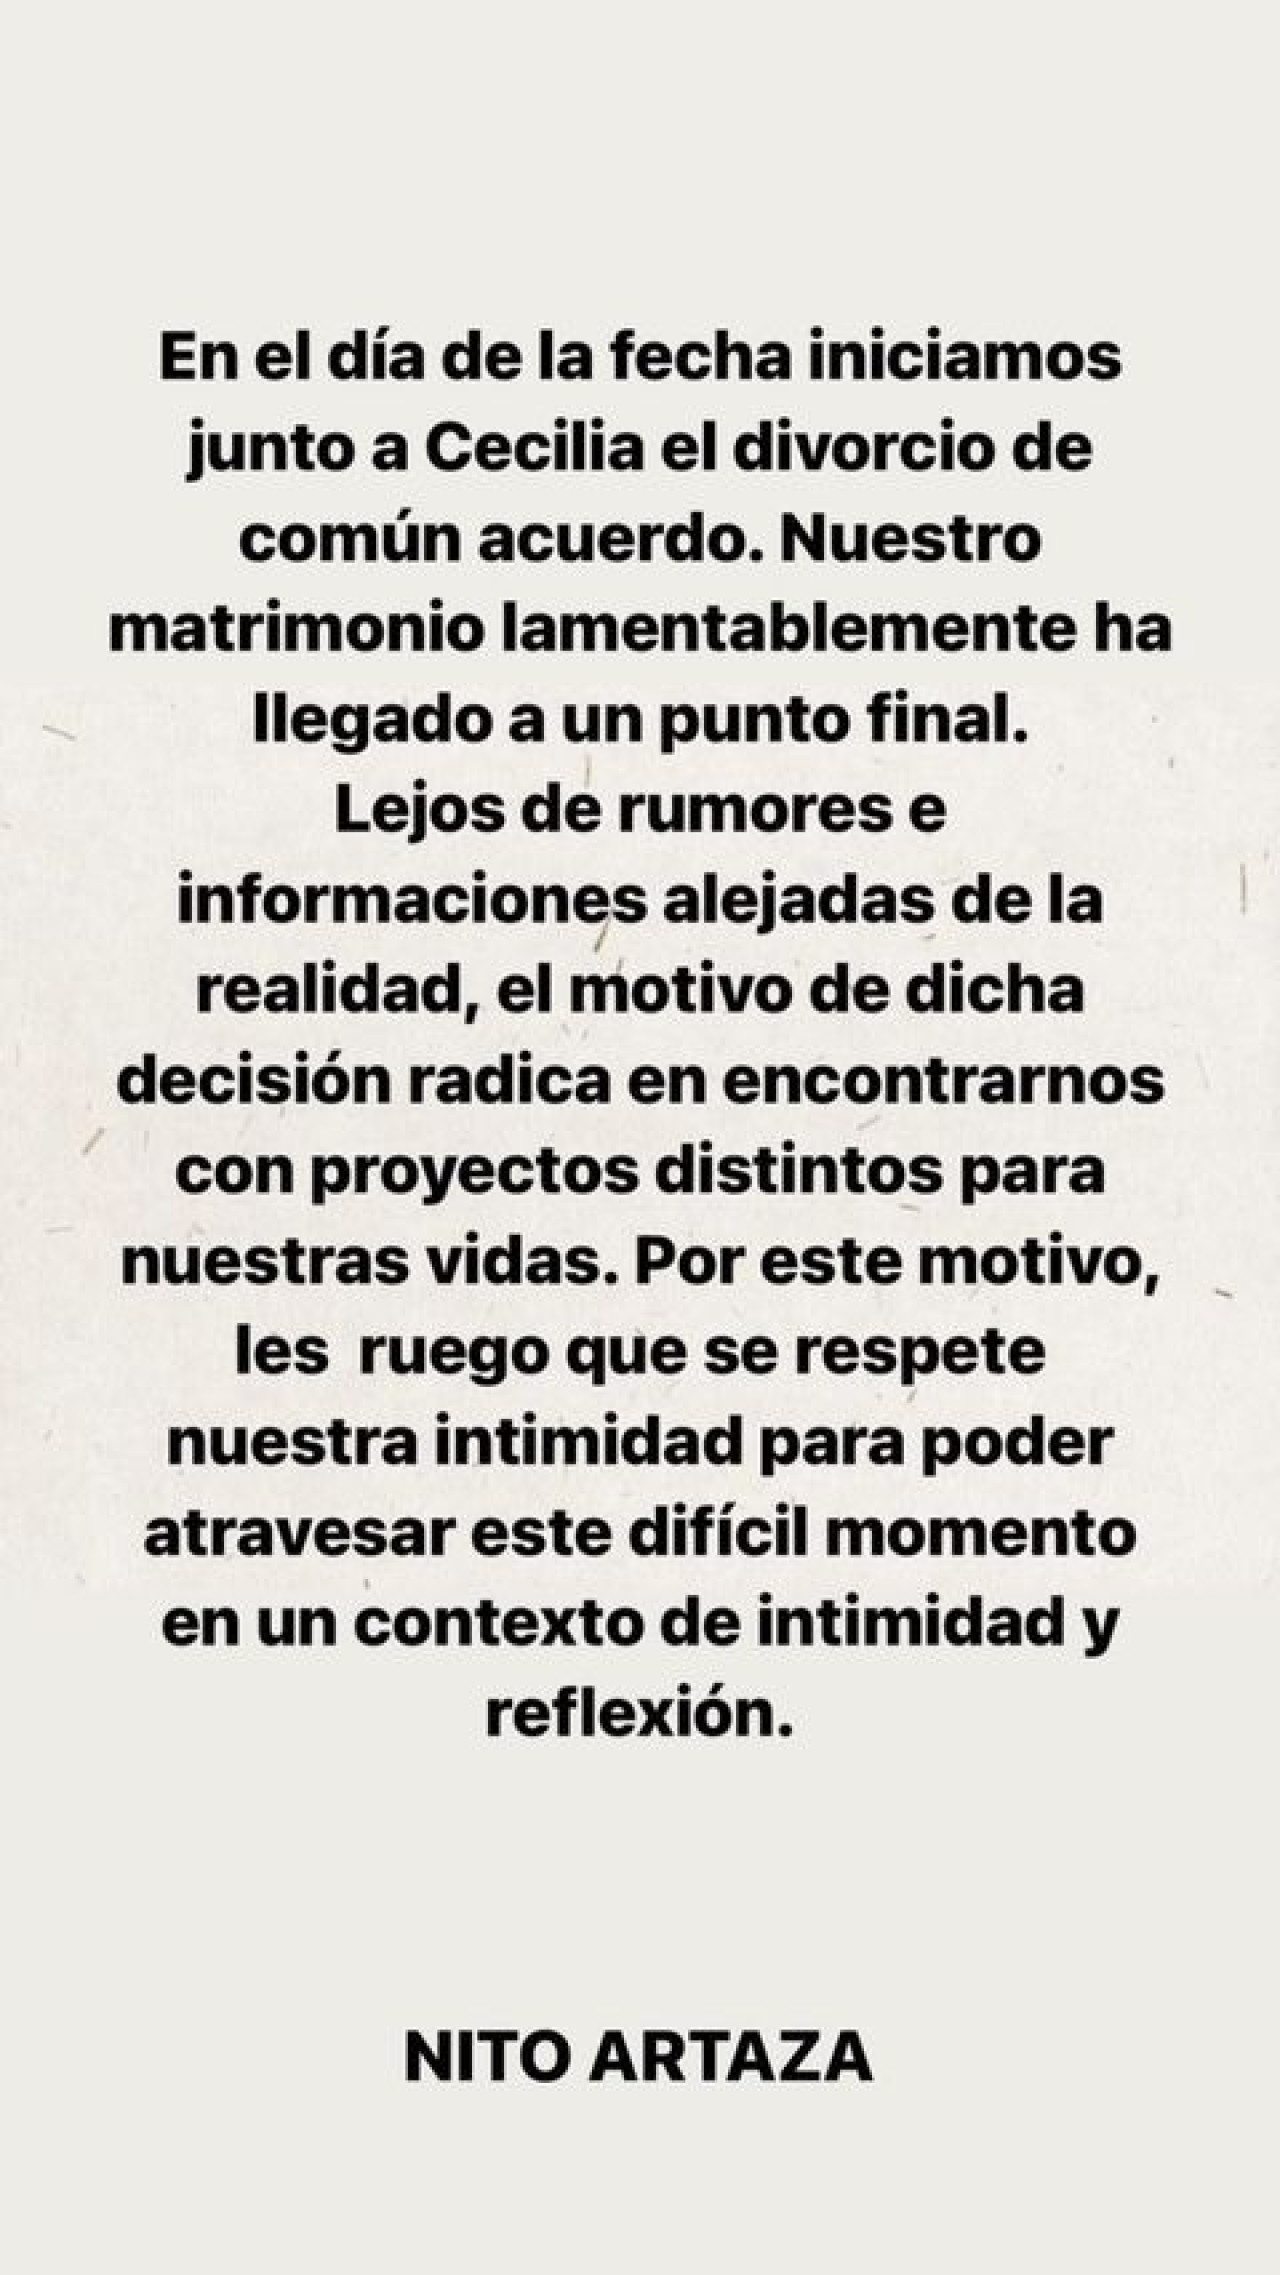 El posteo de Nito Artaza. Foto: Instagram @artazanito